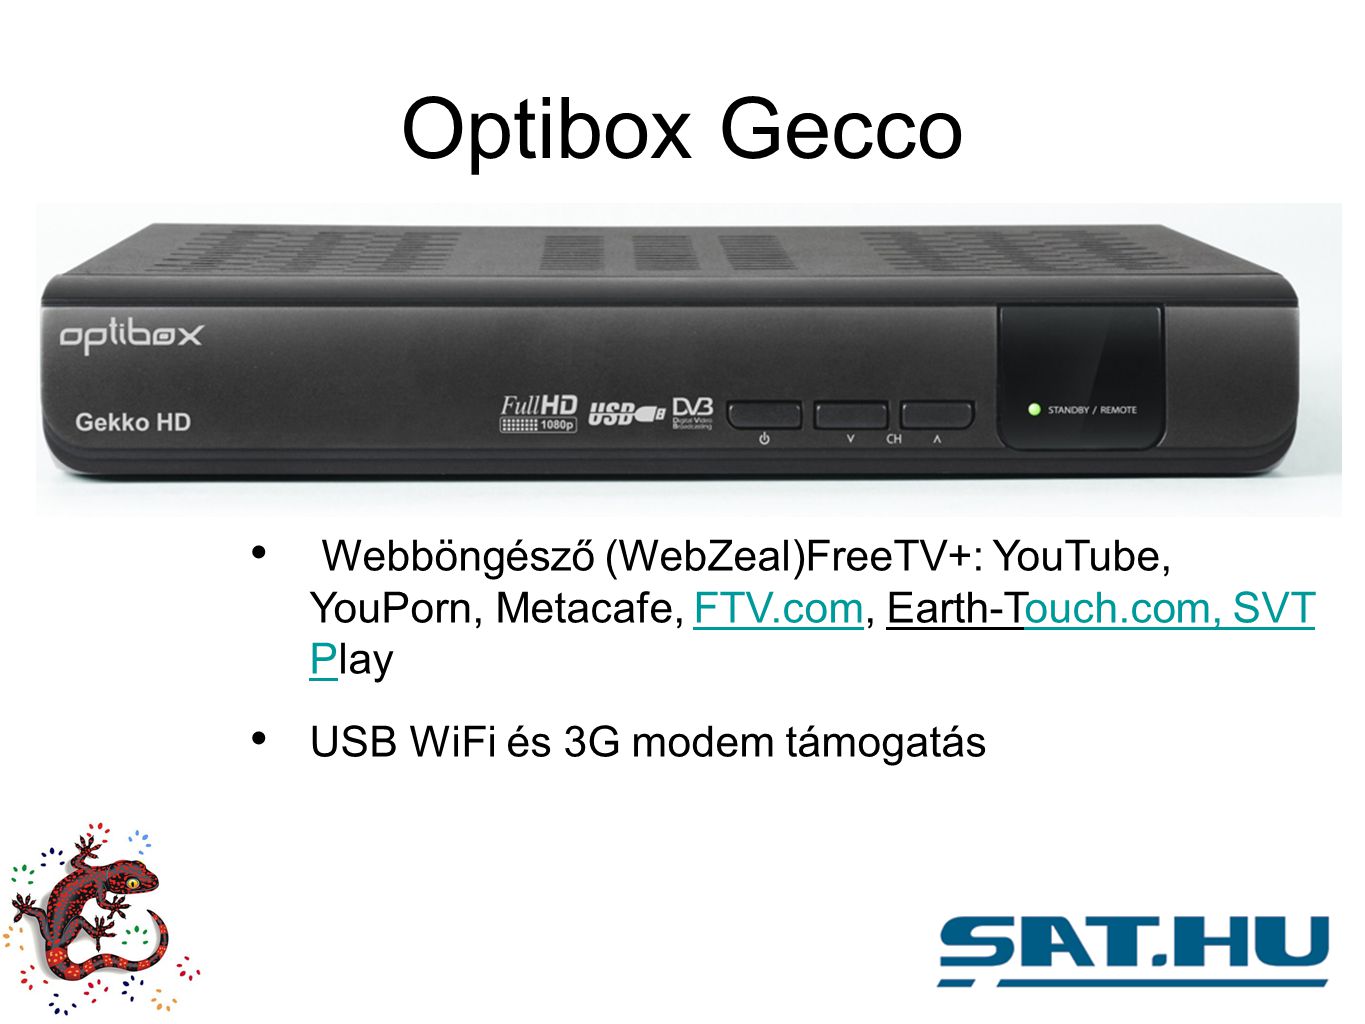 Optibox Gecco Webböngésző (WebZeal)FreeTV+: YouTube, YouPorn, Metacafe, FTV.com, Earth-Touch.com, SVT PlayFTV.comouch.com, SVT P USB WiFi és 3G modem támogatás